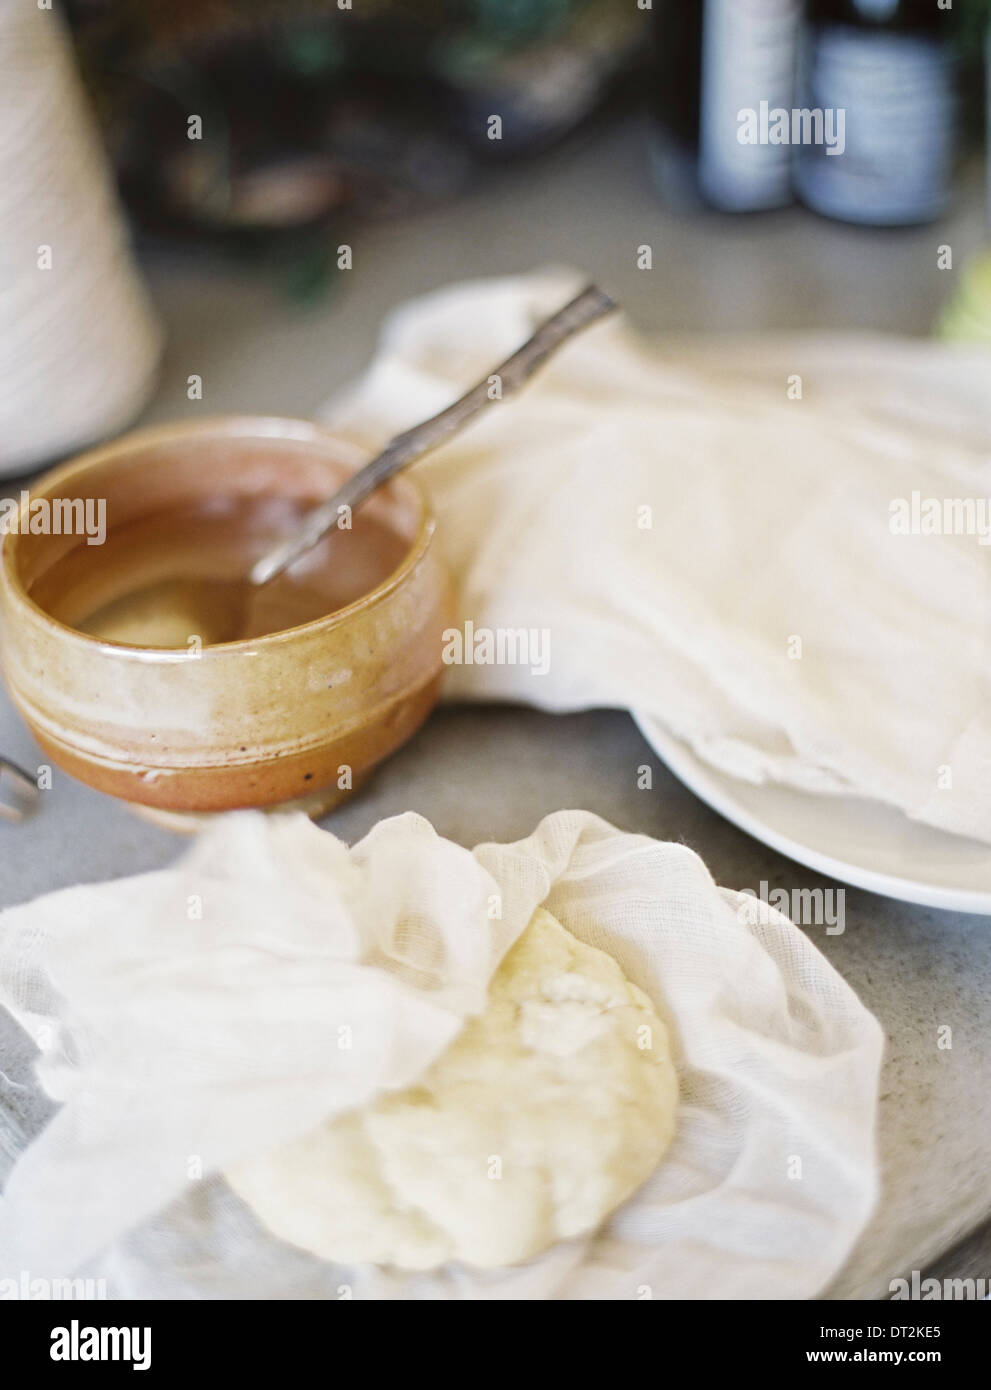 Une table dans une cuisine domestique un bol de liquide avec une cuillère dans un bloc de la pâtisserie fraîche partiellement enveloppé dans un carré de mousseline Banque D'Images